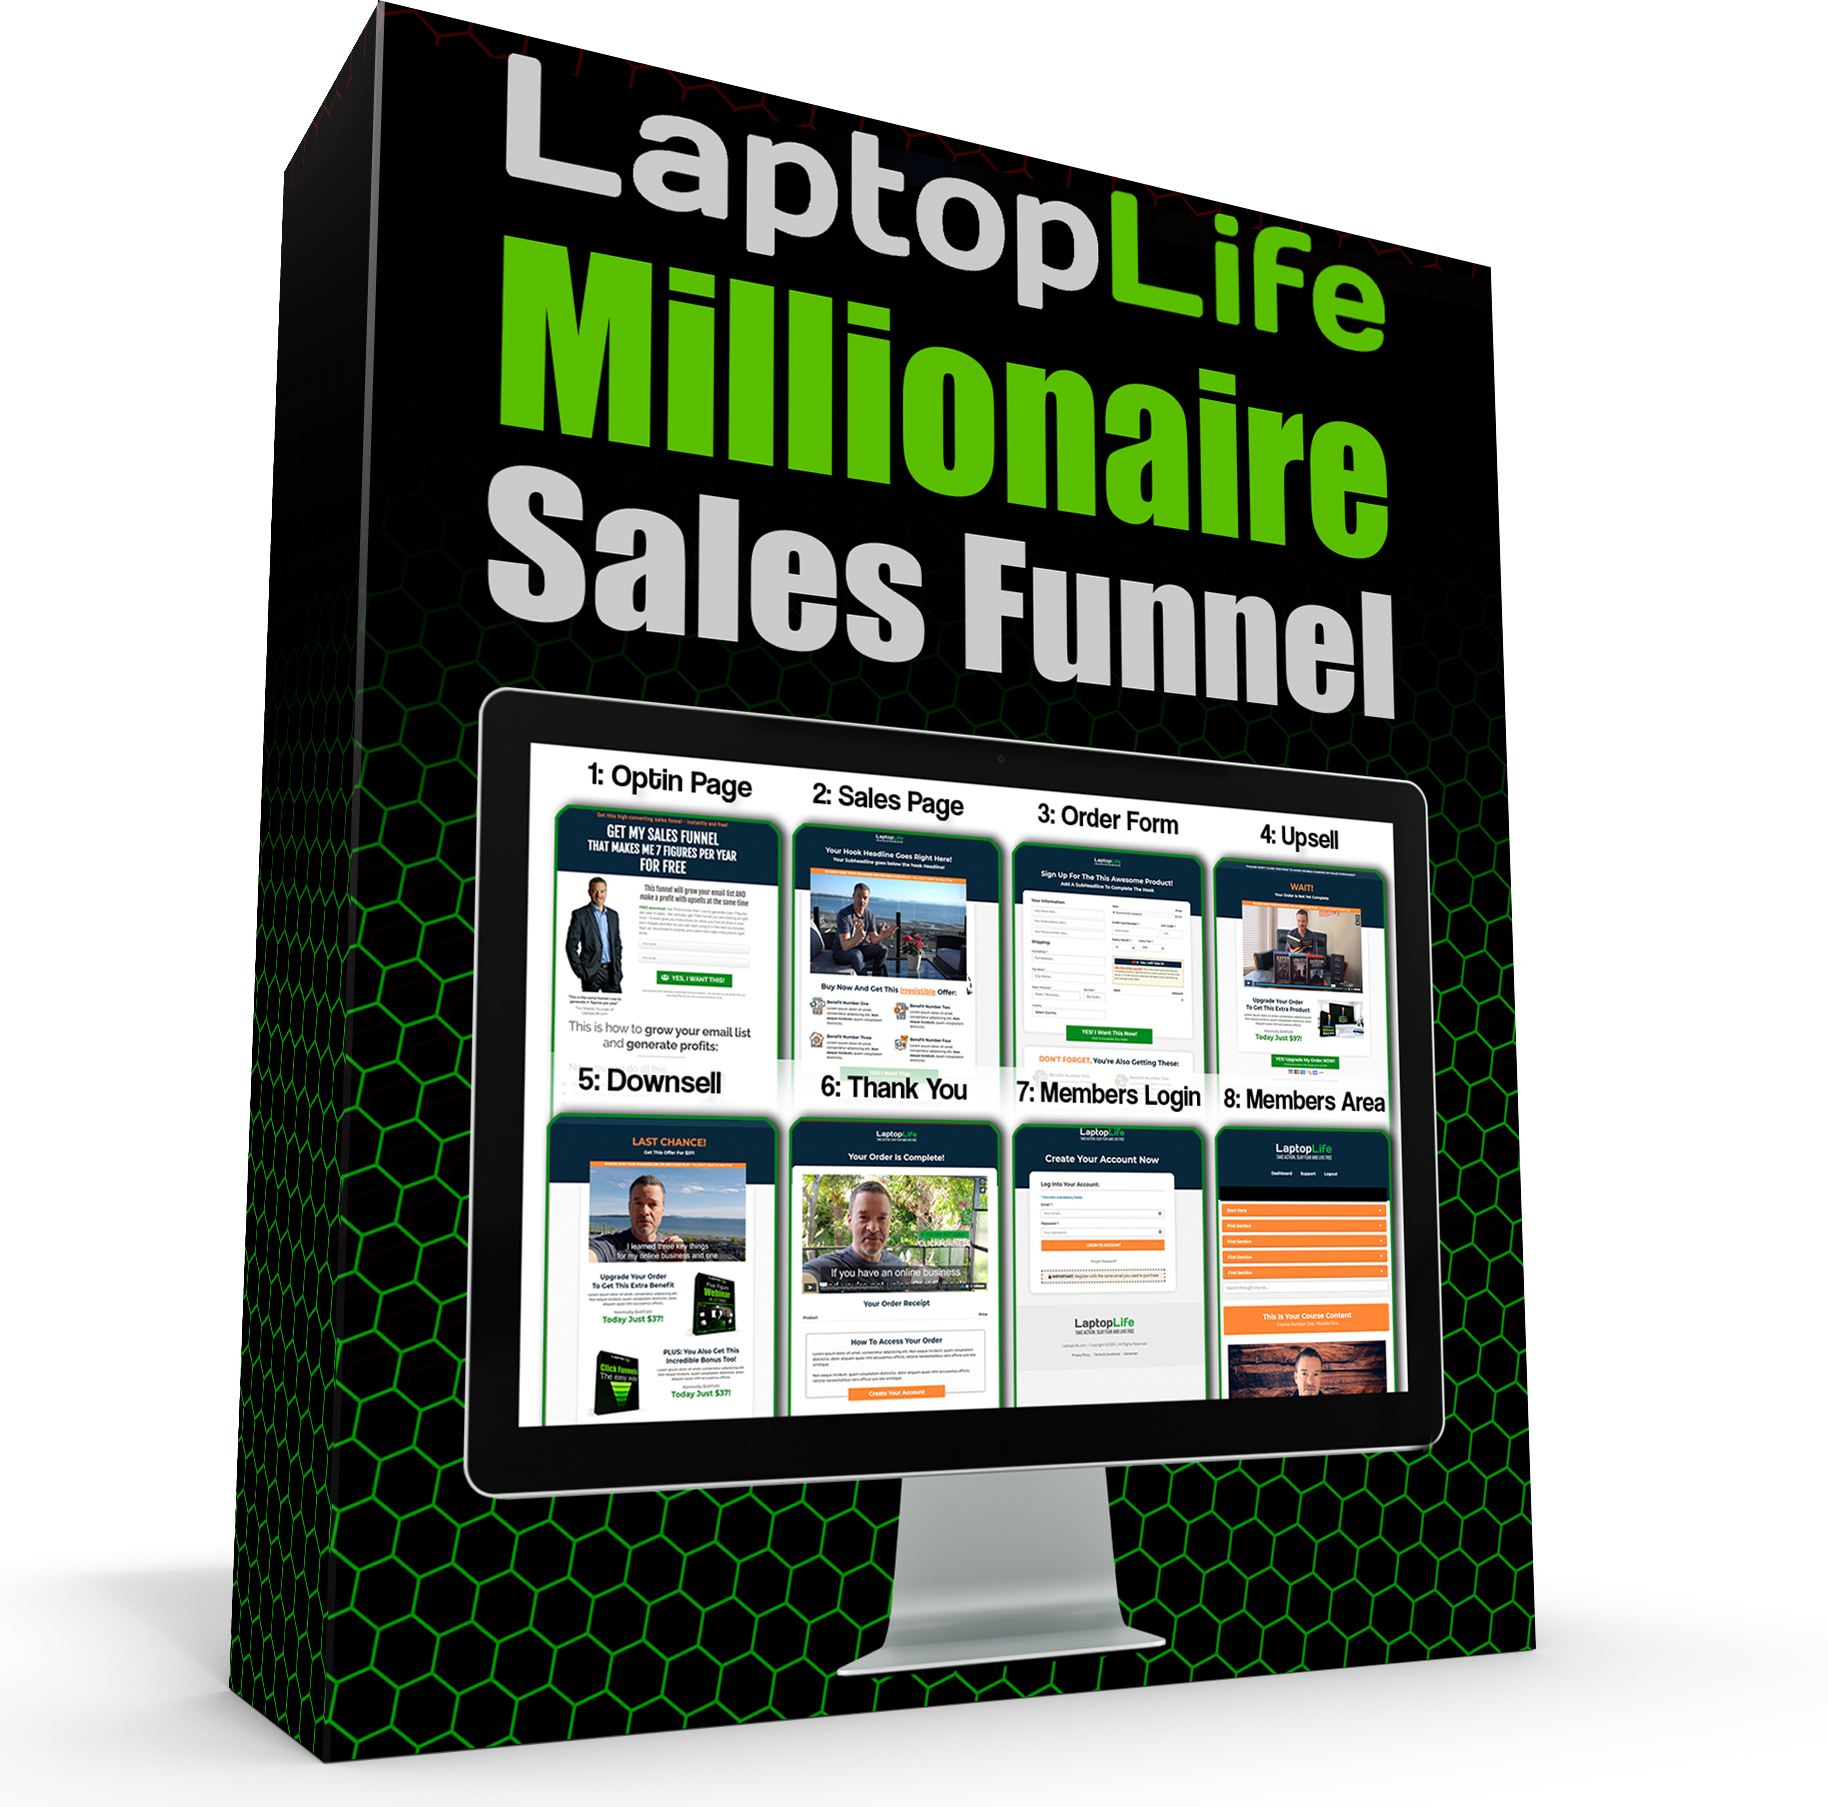 laptoplife millionaire secrets sales funnel